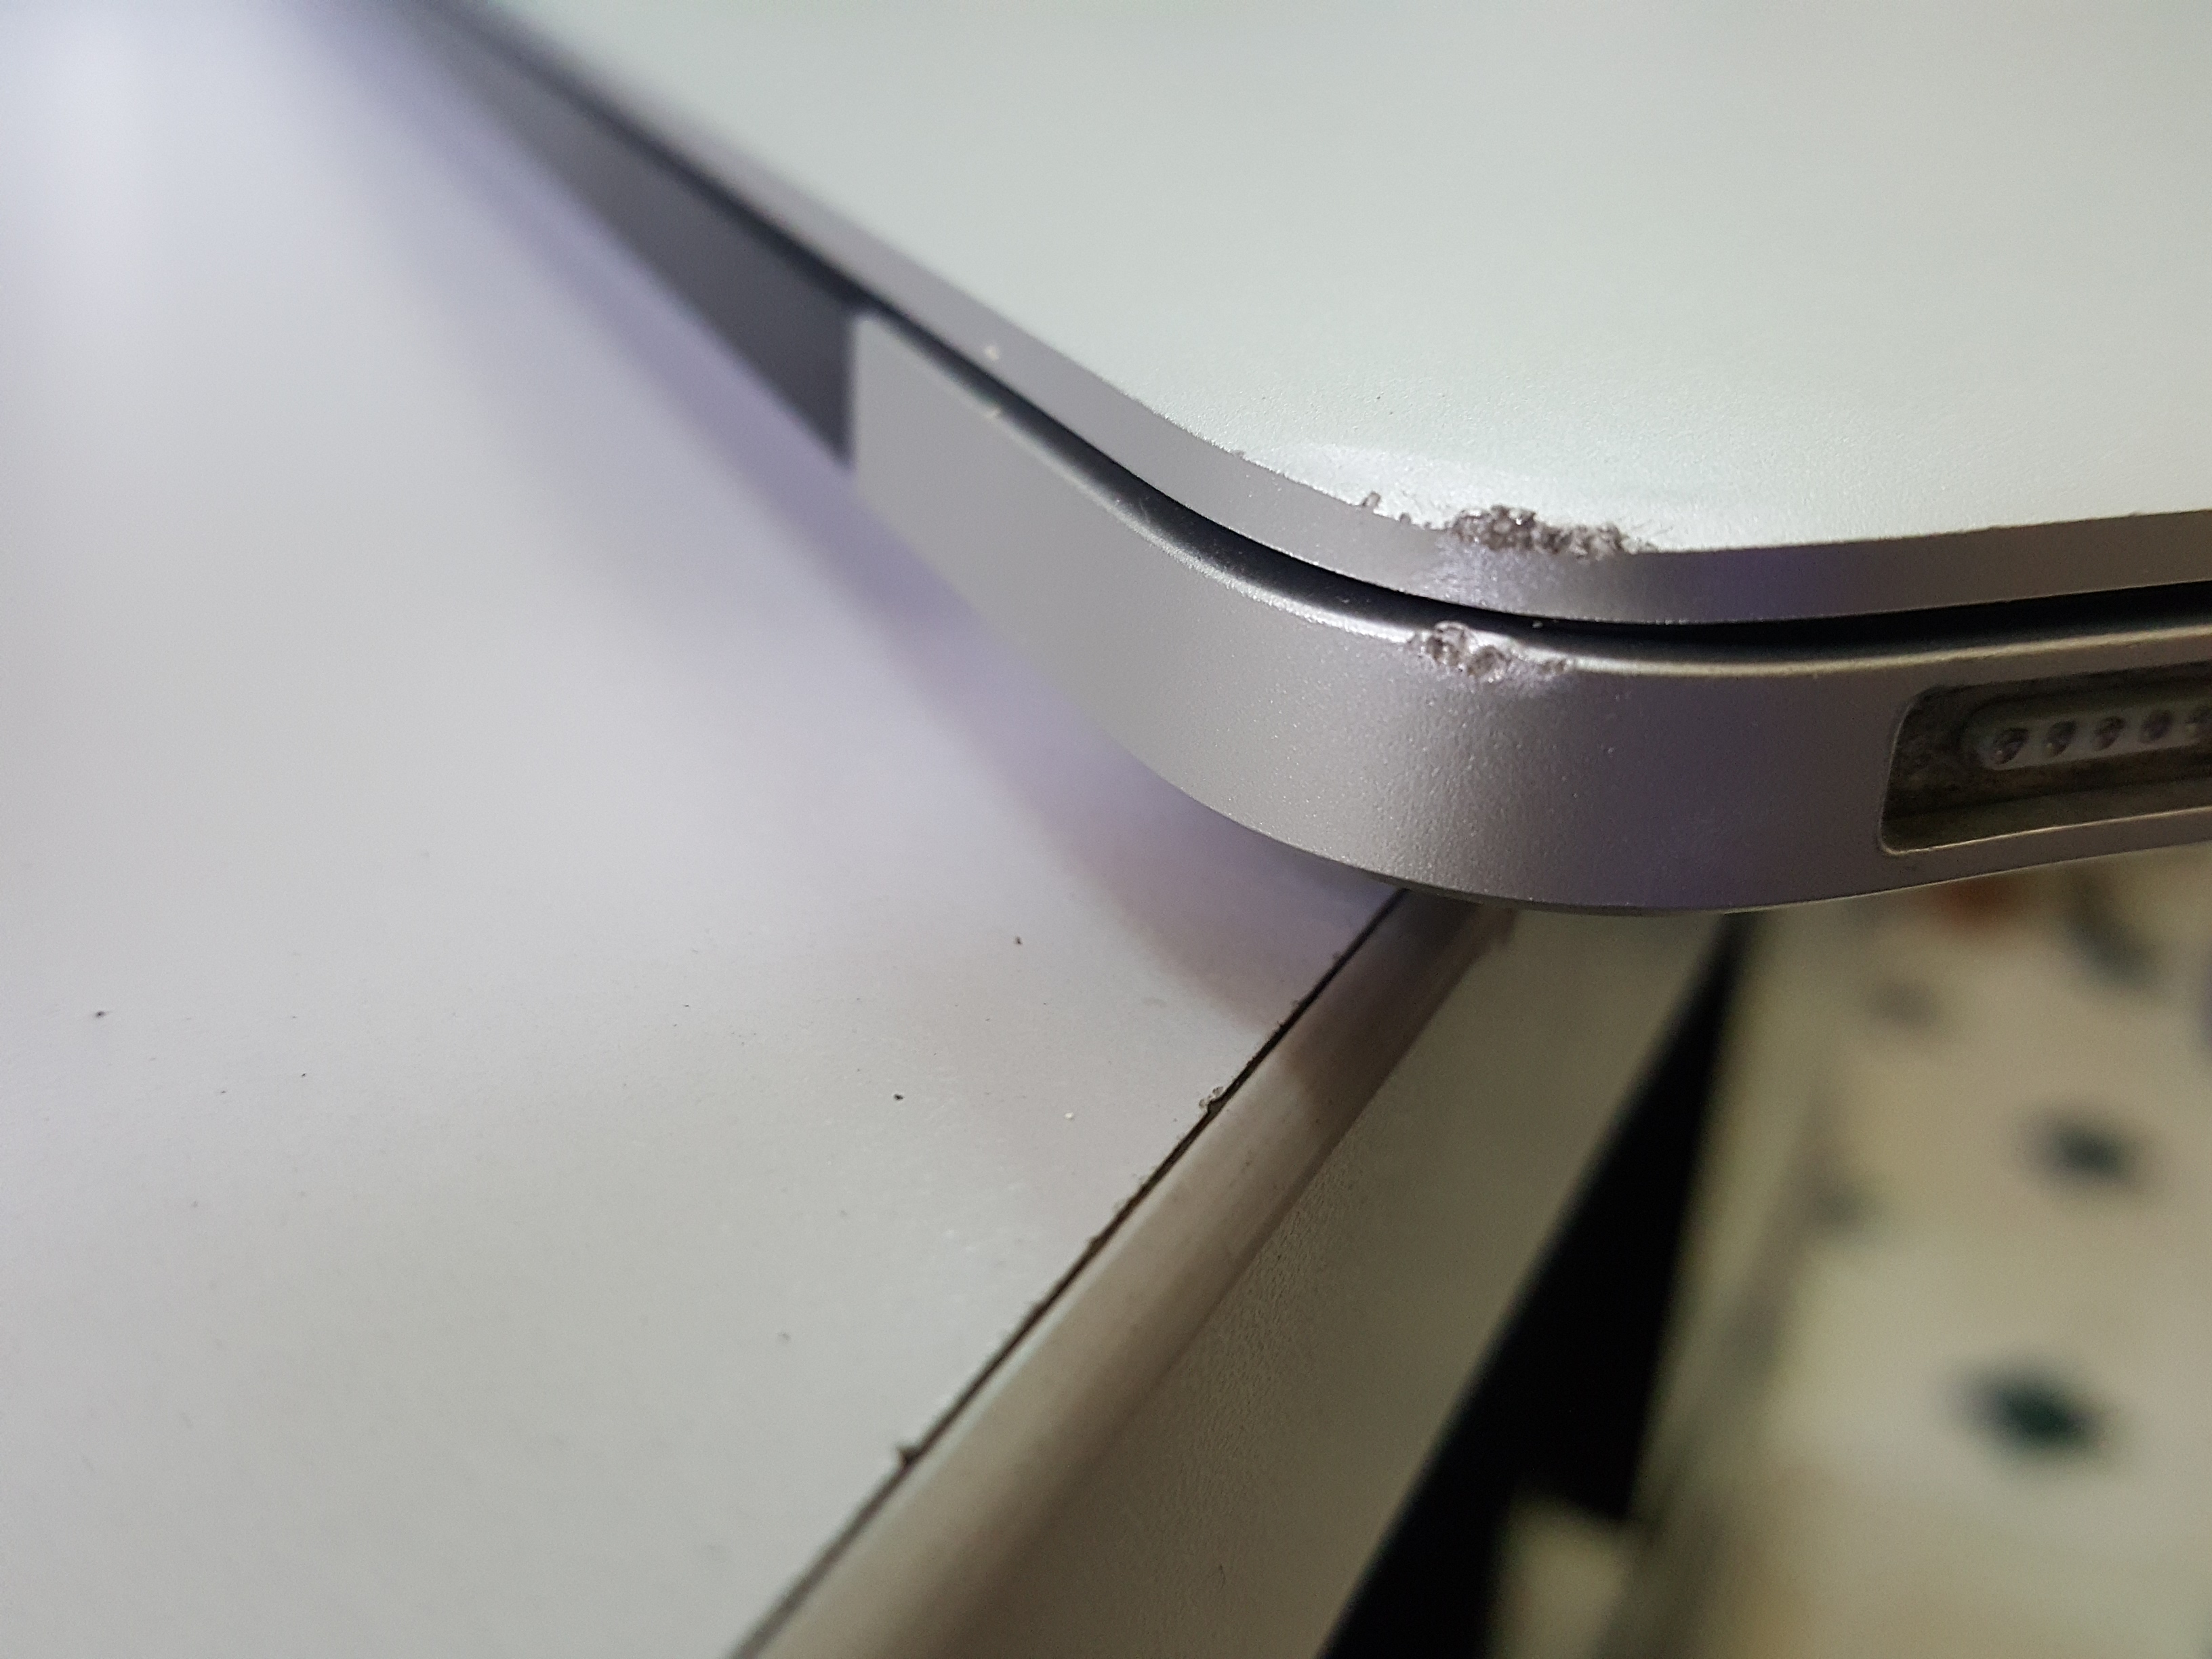 Làm sao để sửa Macbook bị móp vỏ?